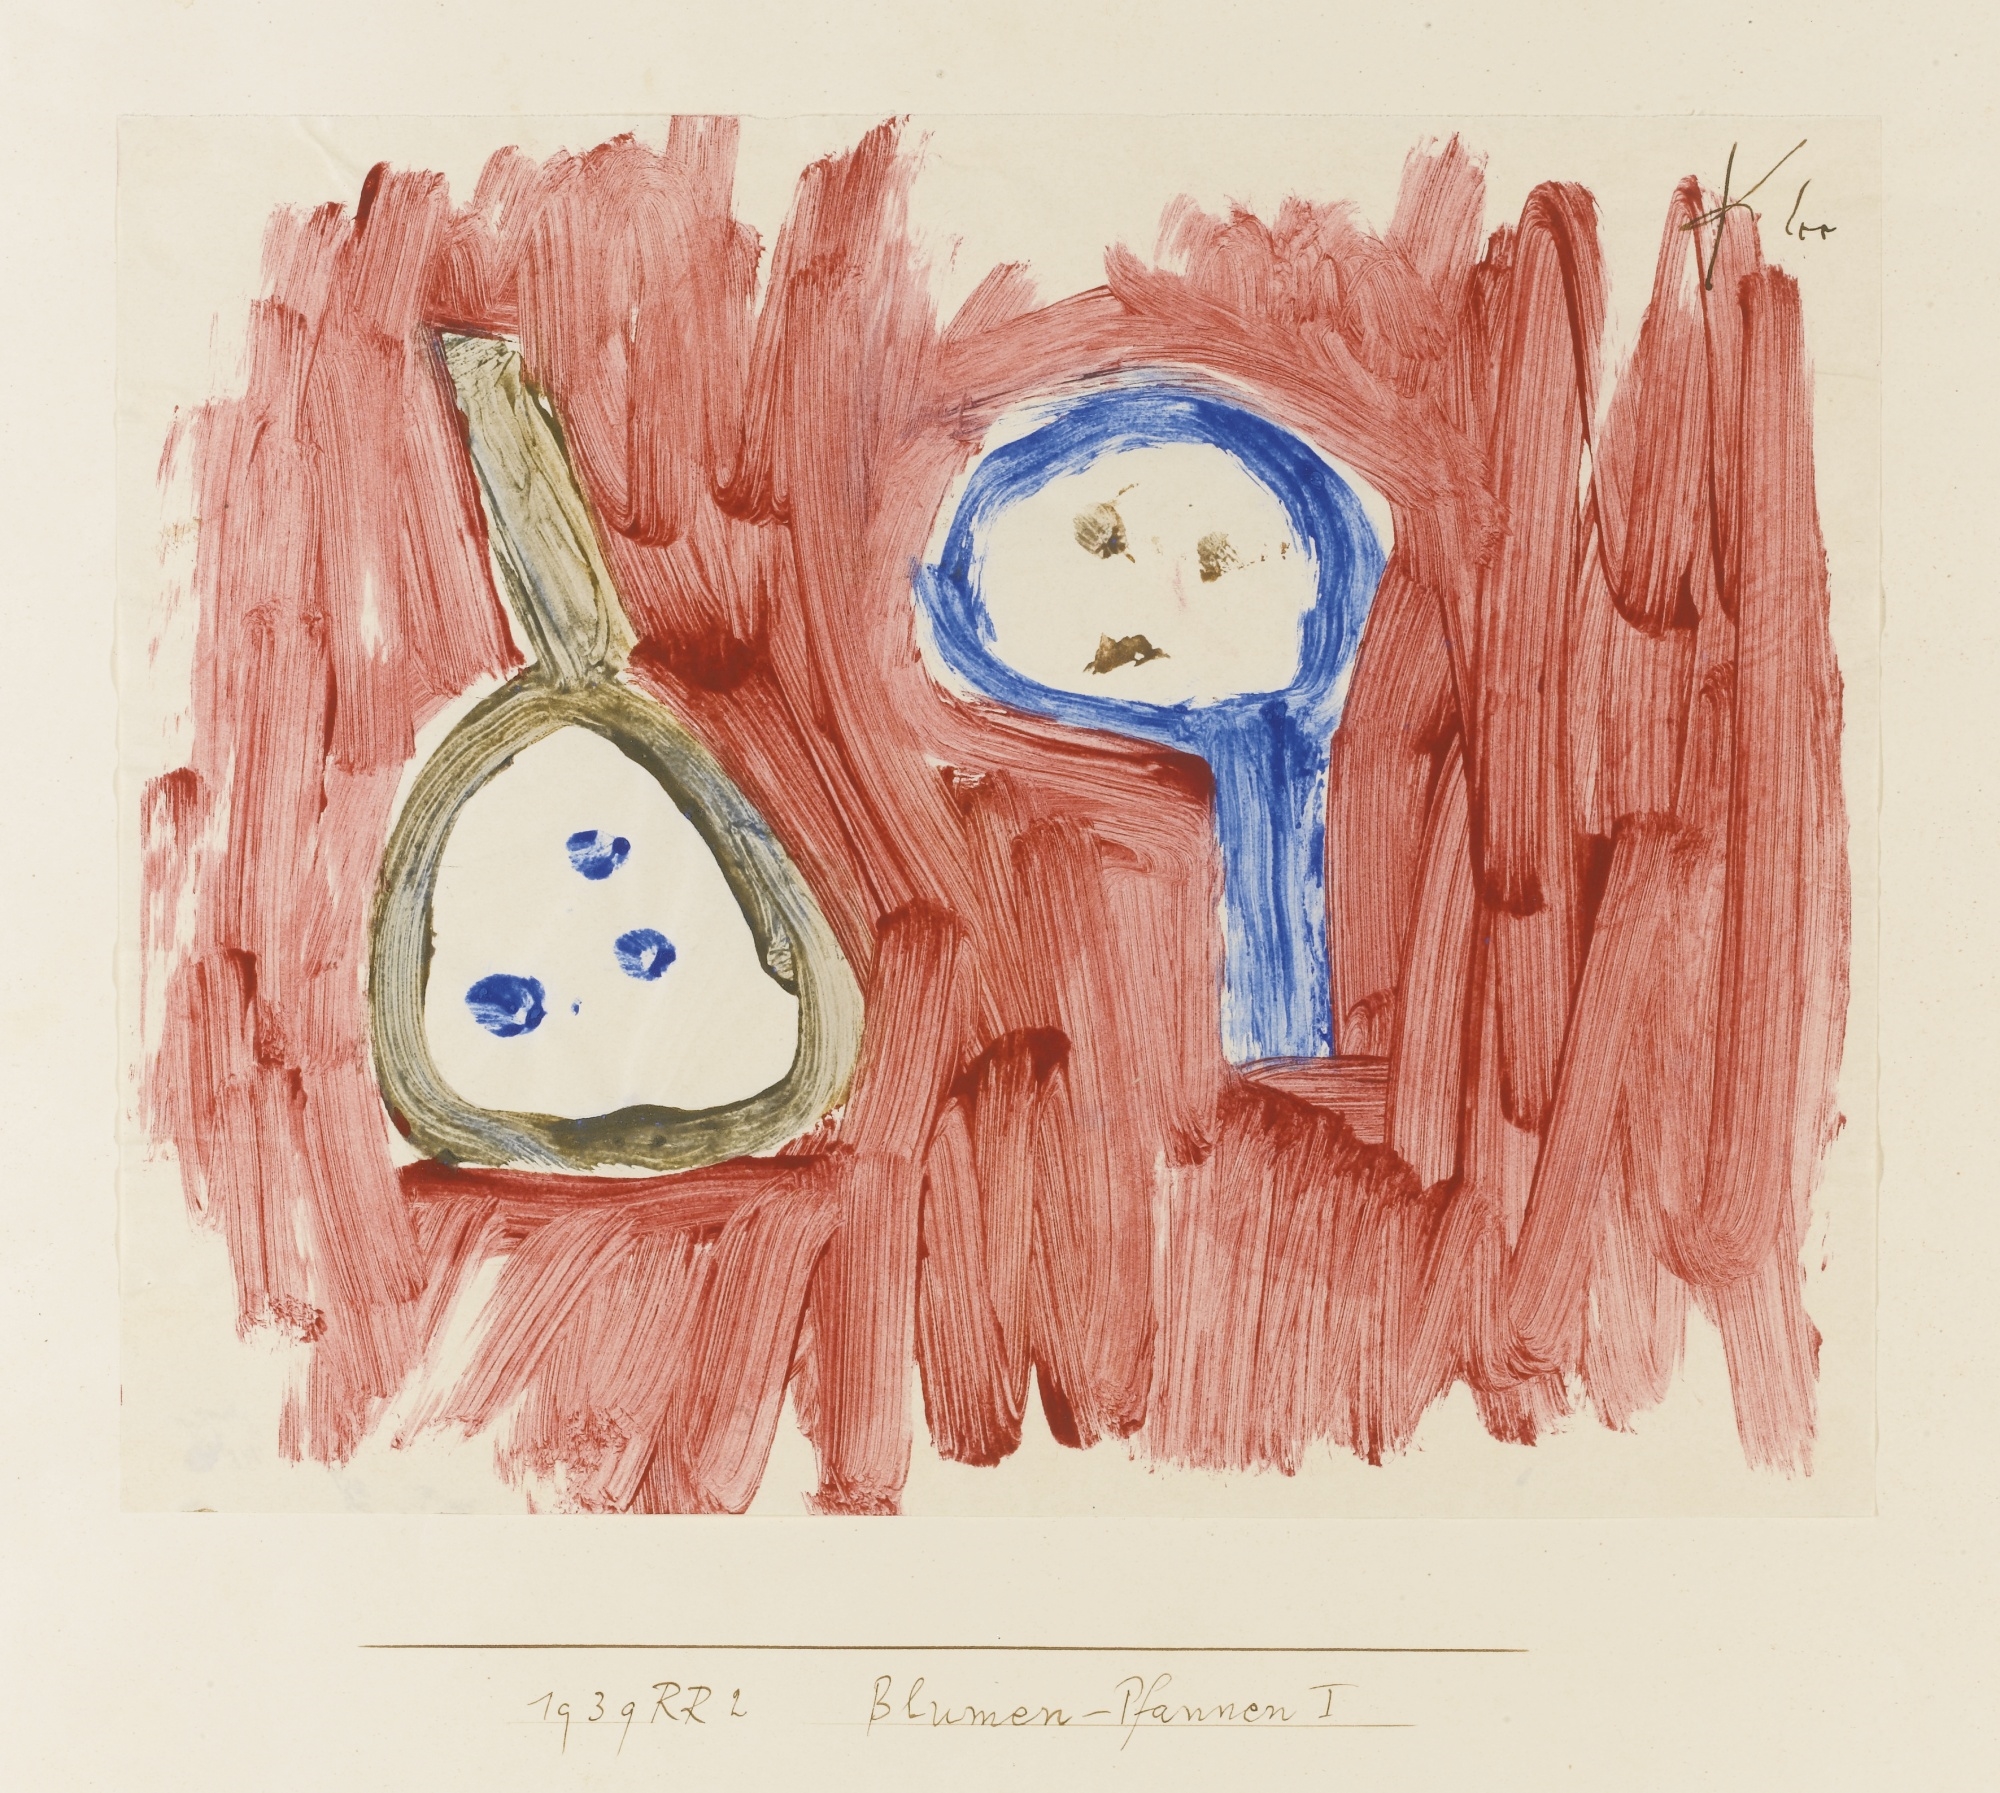 BLUMEN-PFANNEN I (FLOWER-PANS I) by Paul Klee, 1939